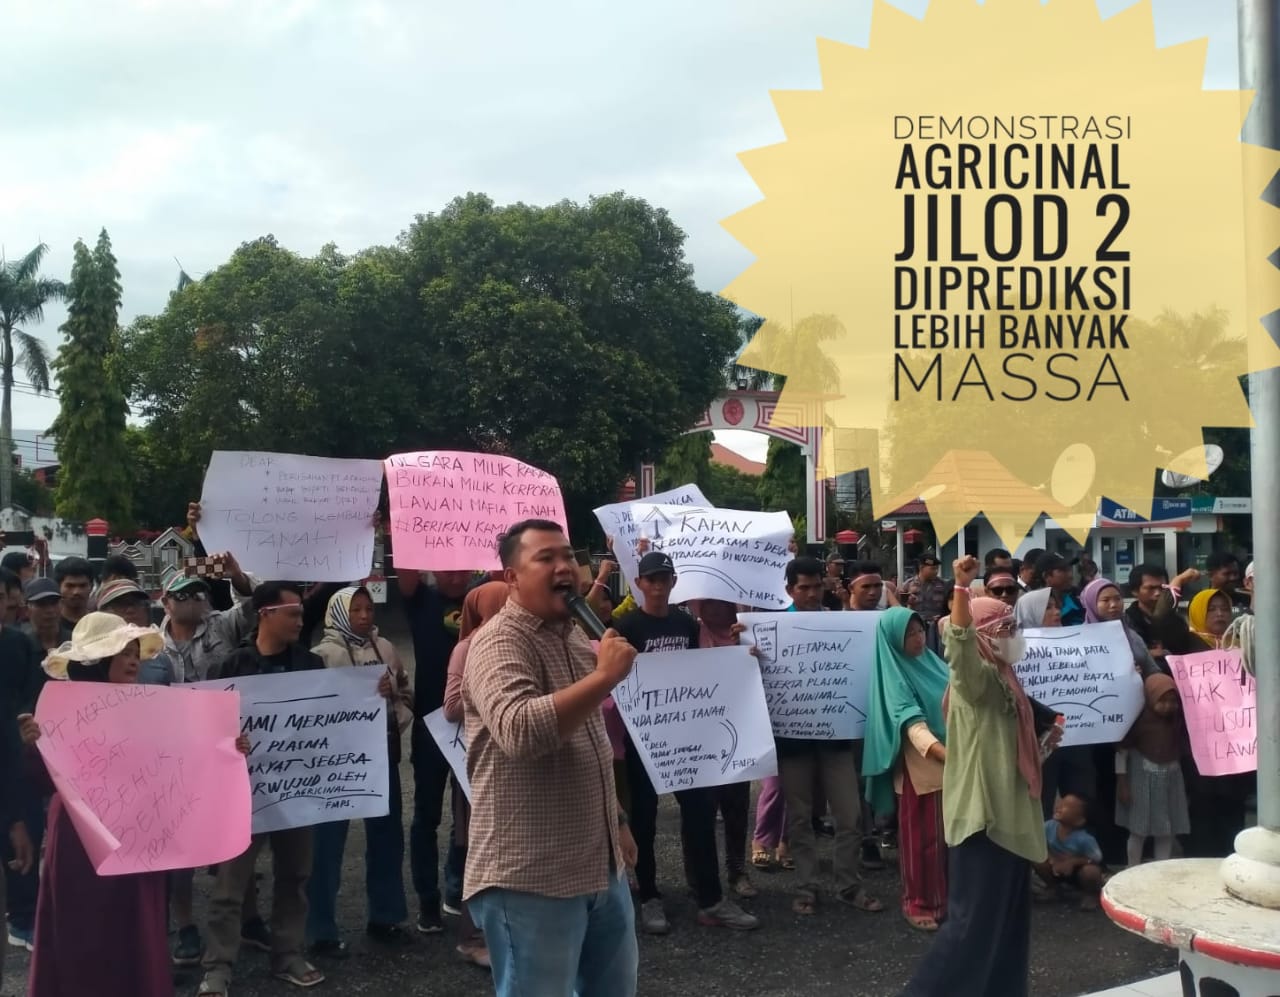 Aksi Demonstrasi Agricinal Jilid II Diprediksi Libatkan Massa Lebih Banyak, Berikut Keterangan Korlap